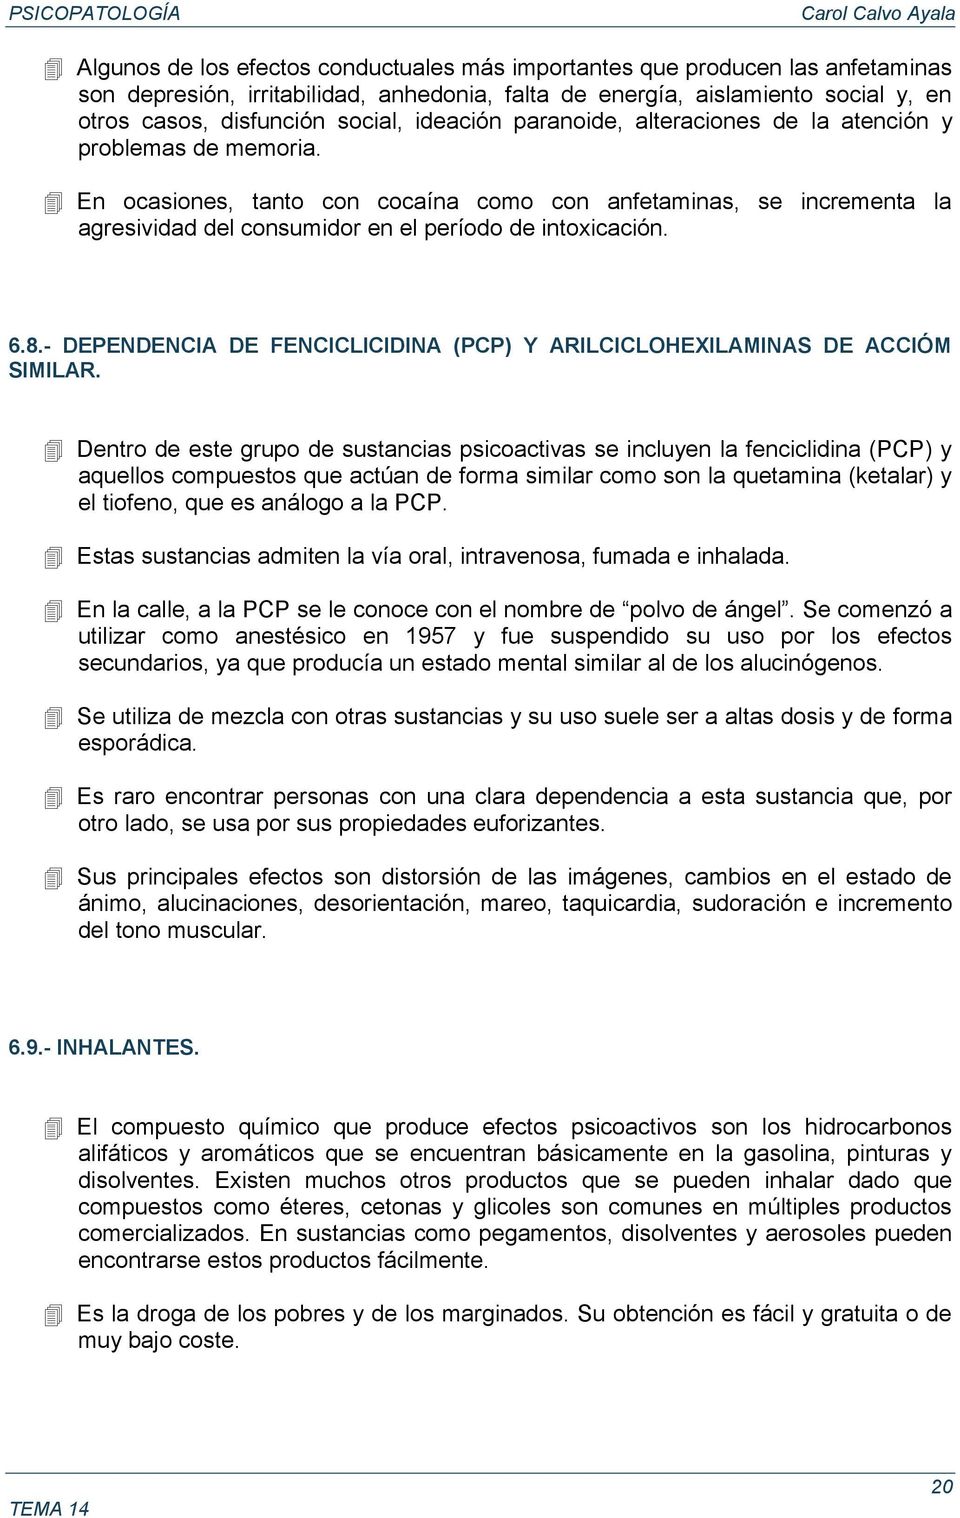 6.8.- DEPENDENCIA DE FENCICLICIDINA (PCP) Y ARILCICLOHEXILAMINAS DE ACCIÓM SIMILAR.